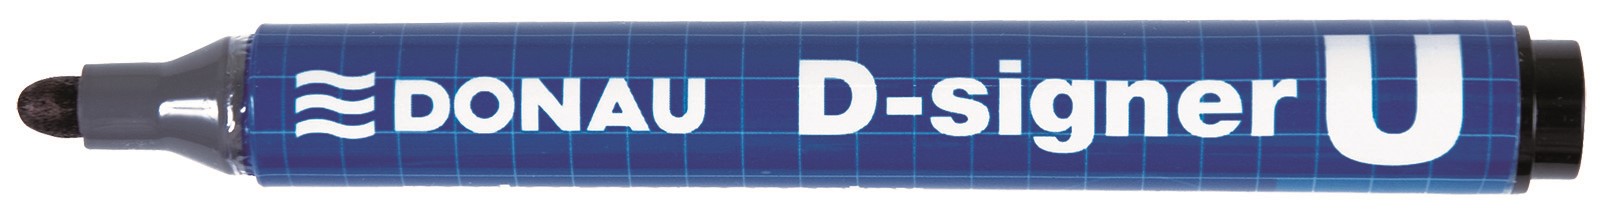 Marker permanentny DONAU D-Signer U, okrągły, 2-4mm (linia), czarny